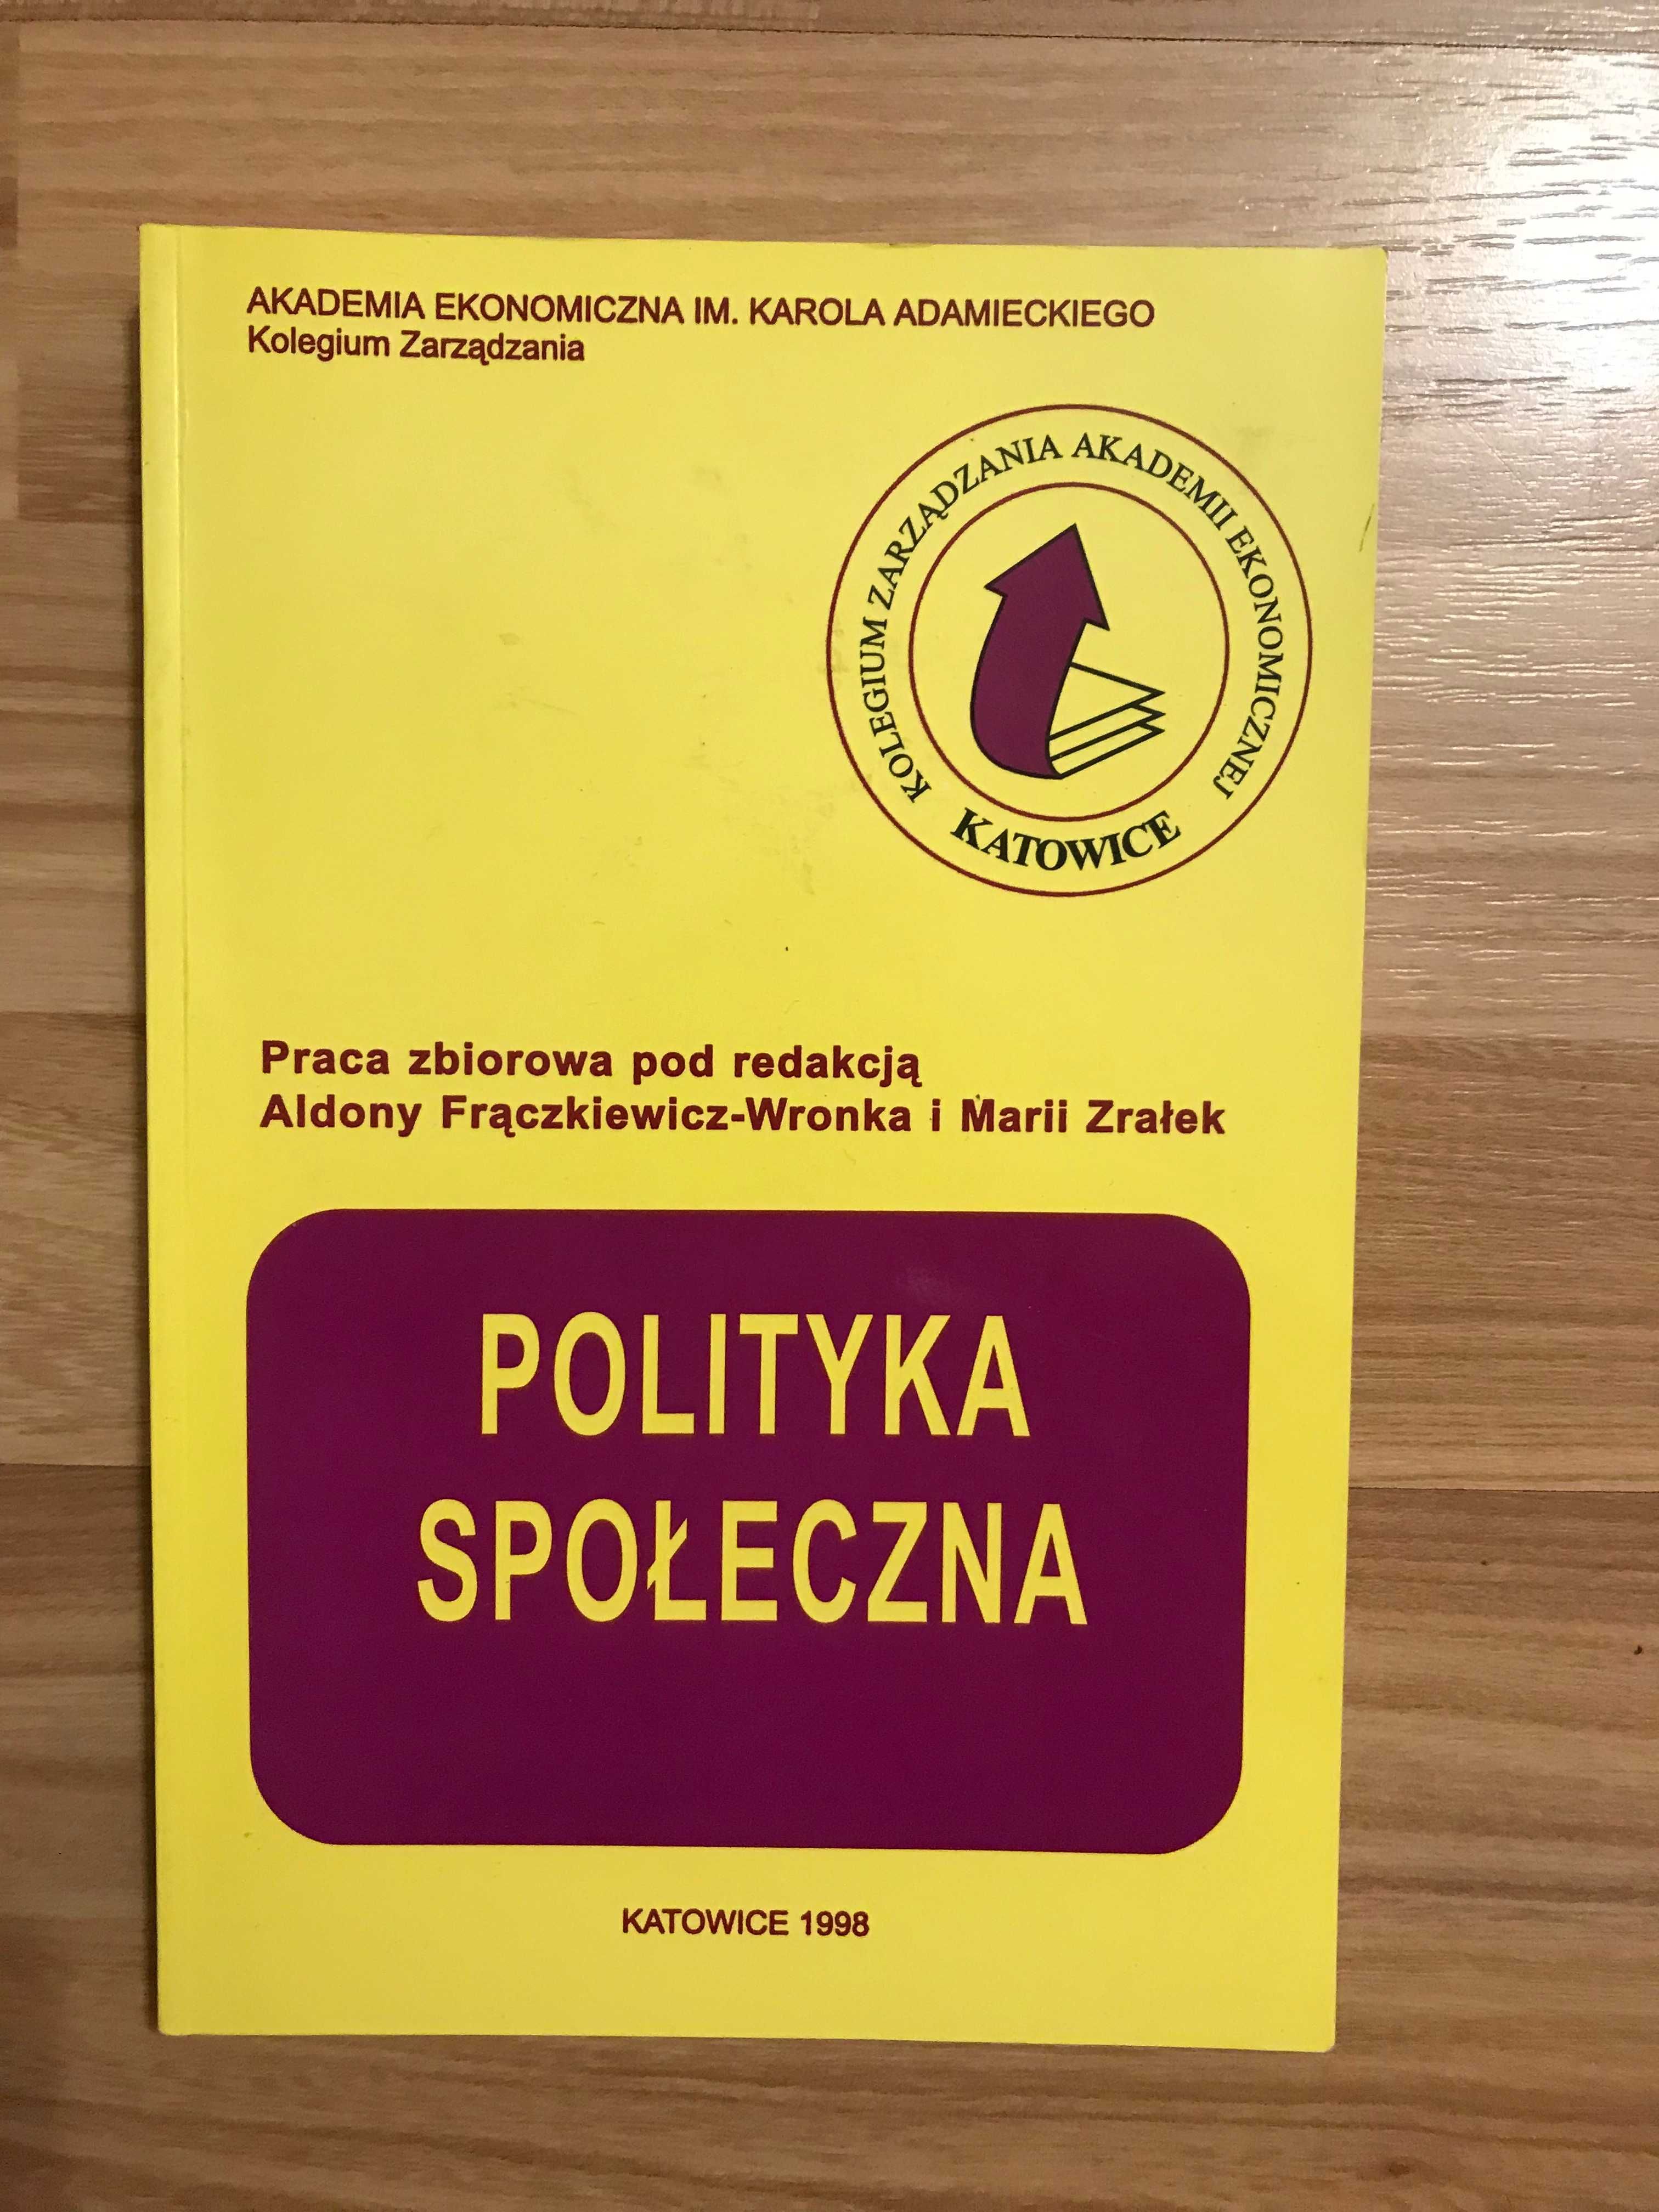 /Zarządzanie/ Polityka Społeczna Frączkiewicz - Wronka Maria Zrałek